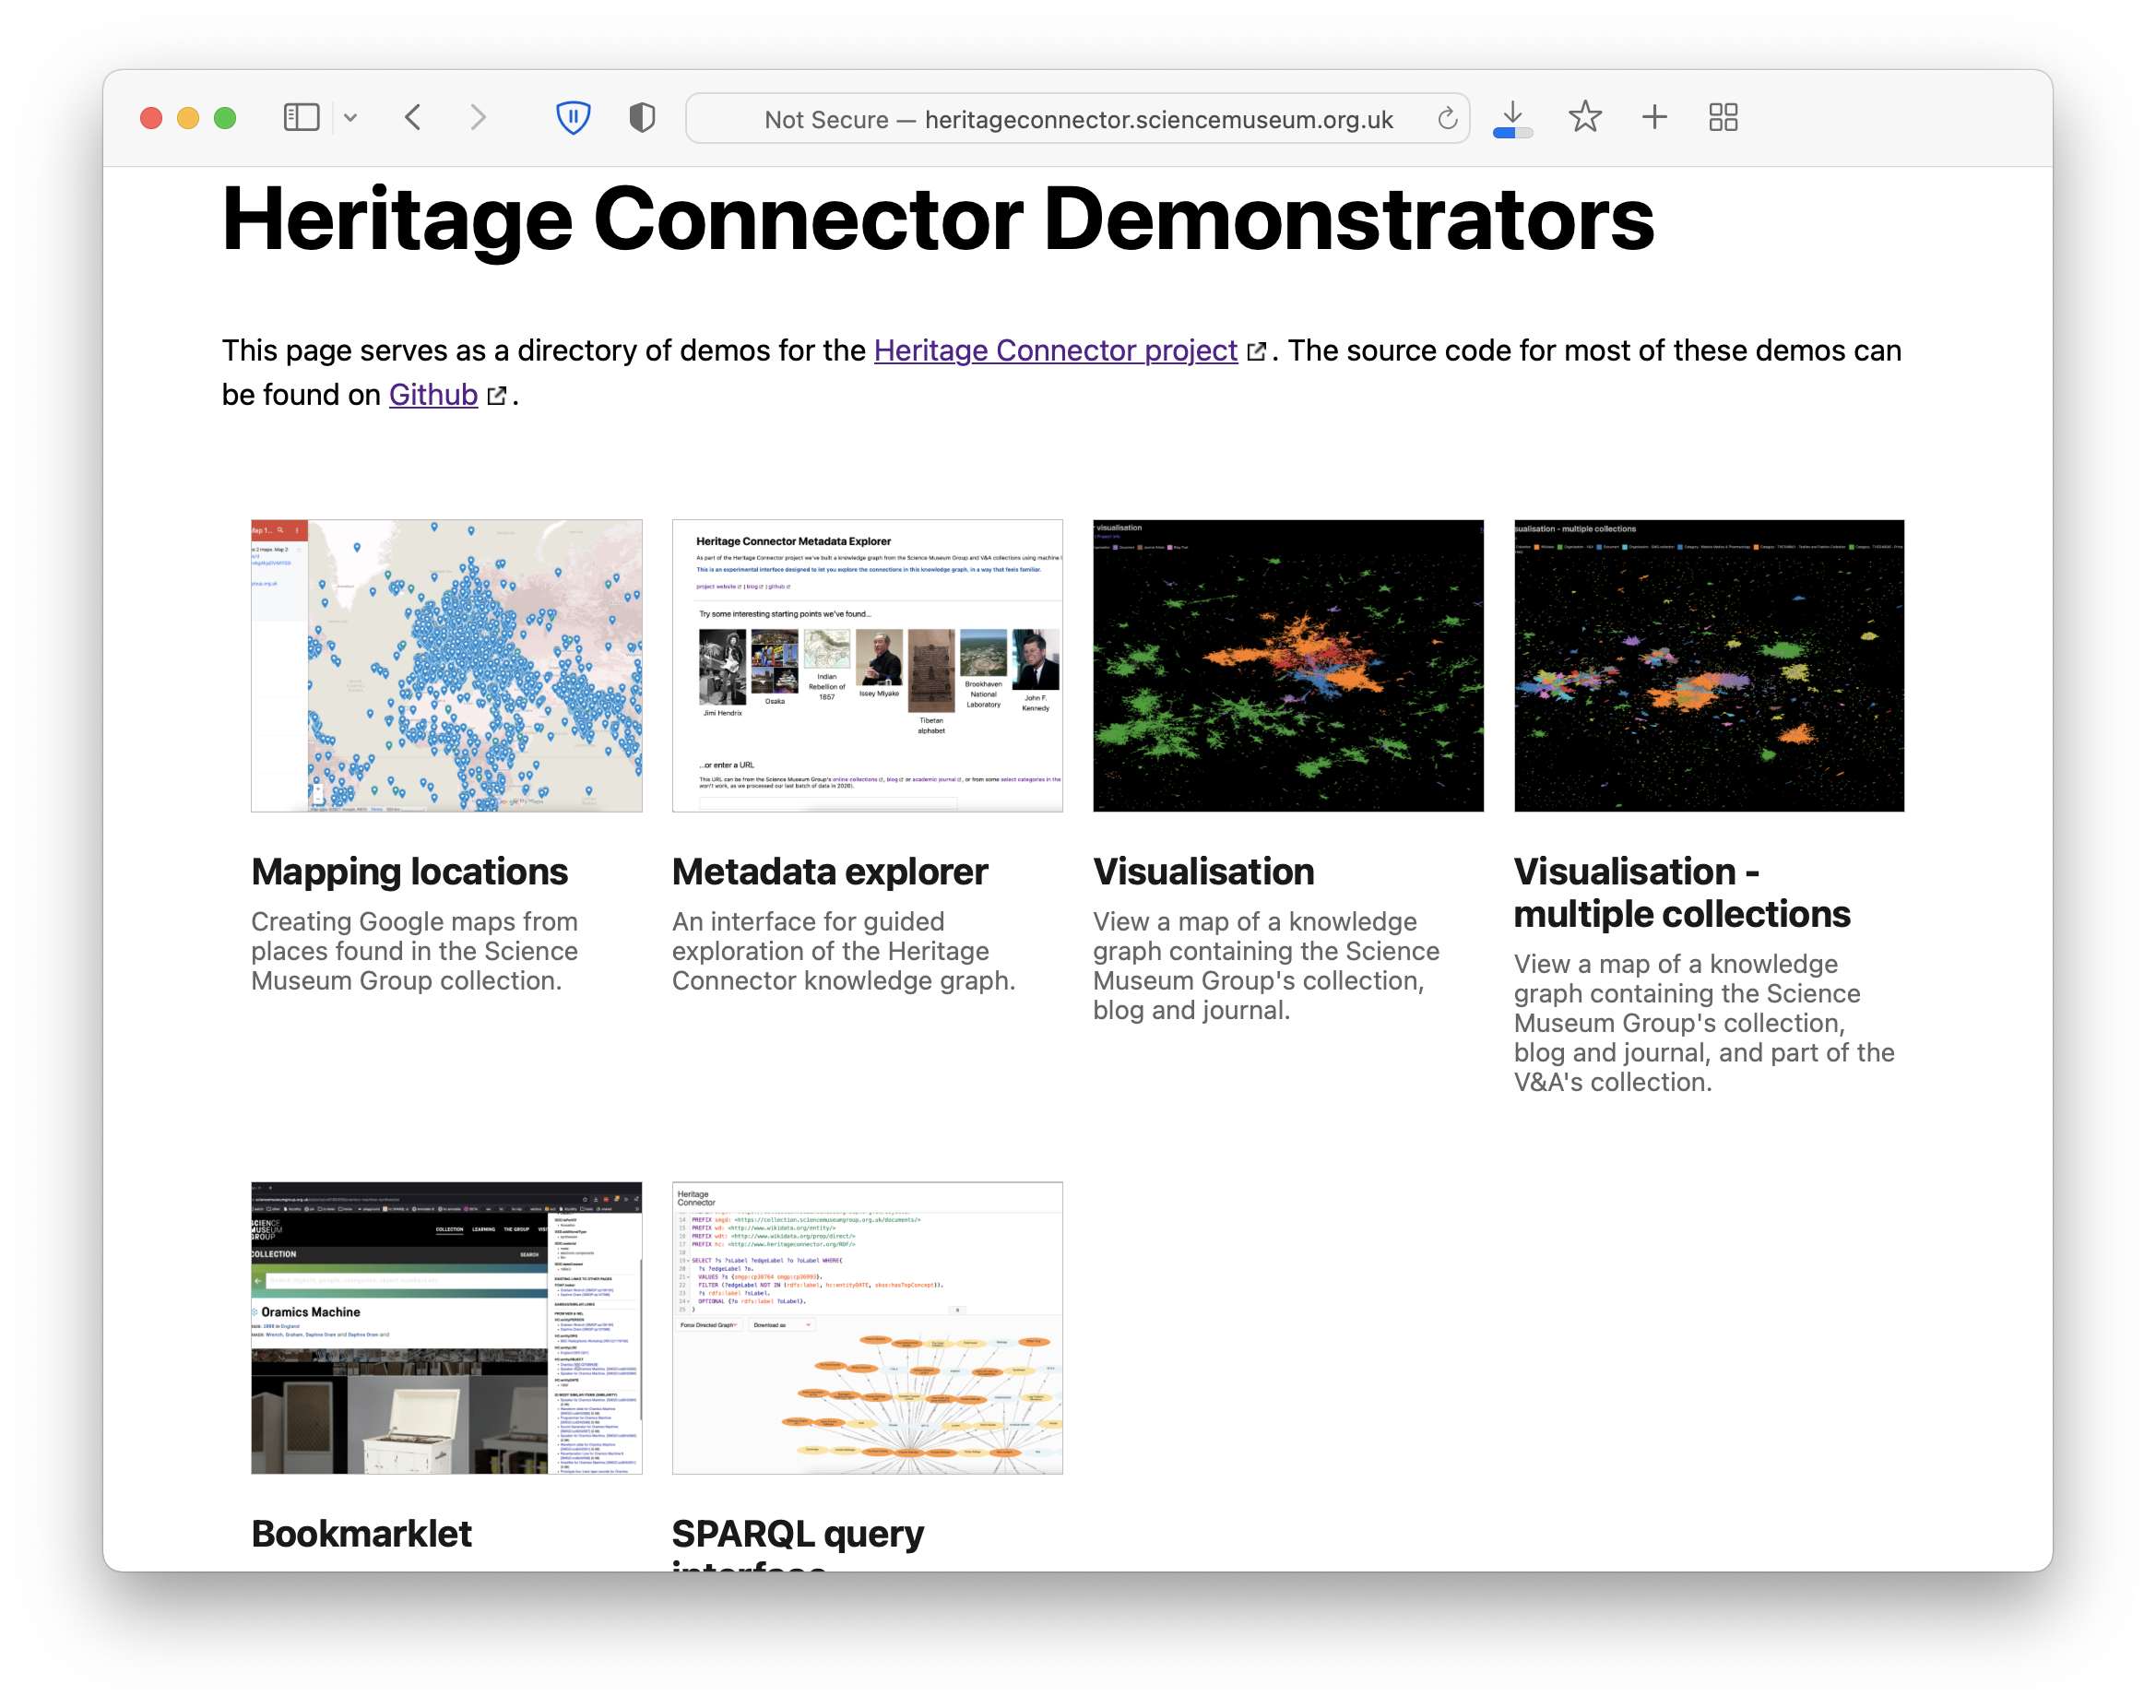 Screengrab of Heritage Connector Demonstrators webpage.